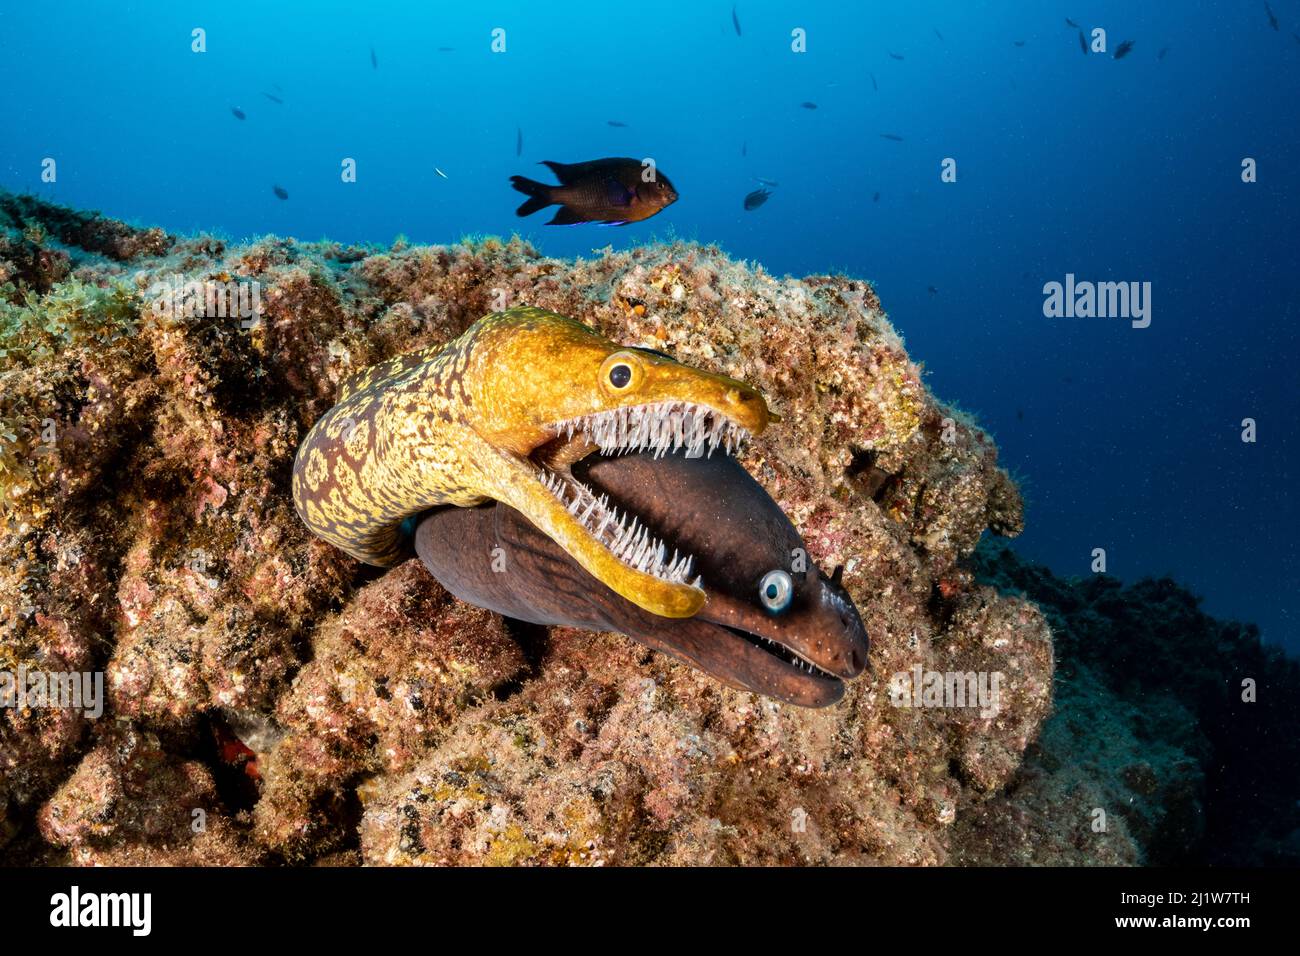 Tiger moray / Fangtooth Moray (Enchelycore anatina) and Black moray eel (Muraena augusti),  South Tenerife, Canary Islands, Atlantic Ocean. Stock Photo